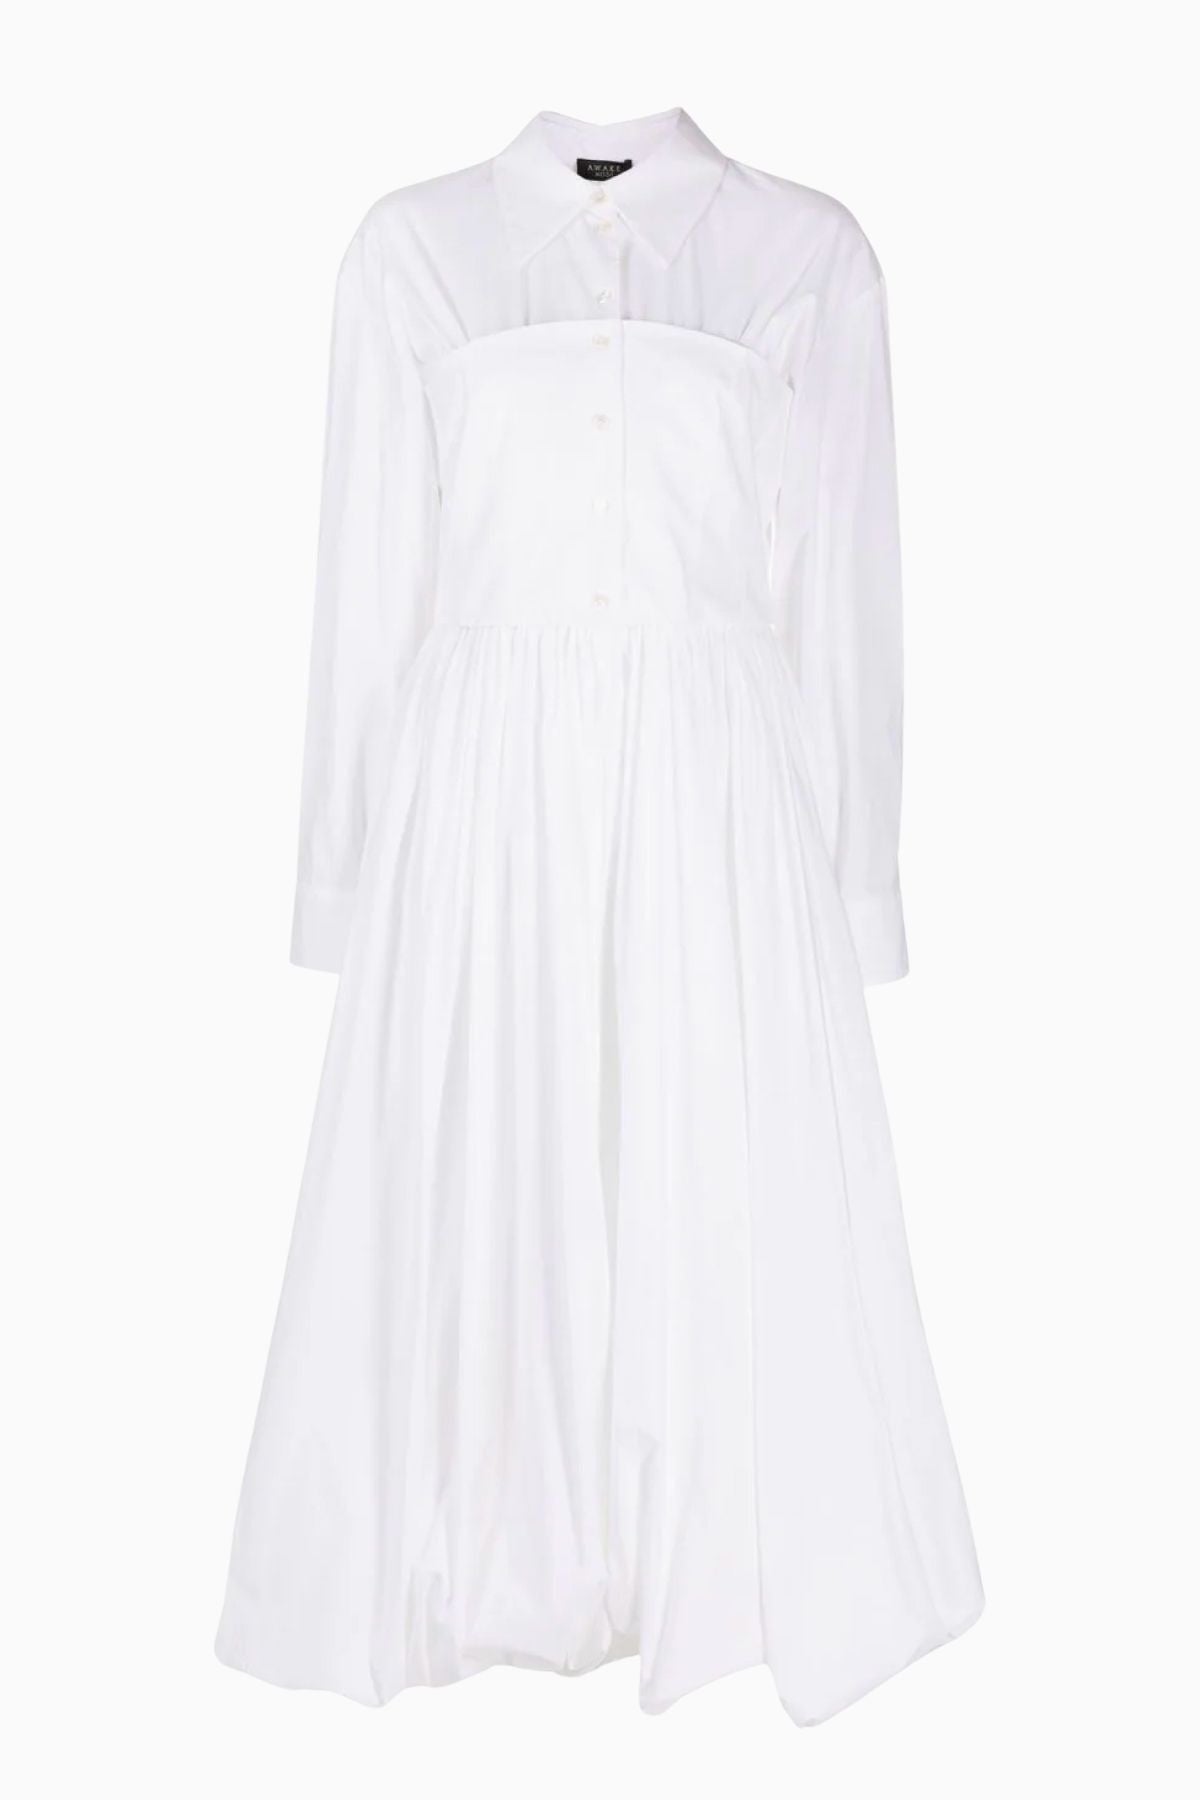 A.W.A.K.E. Mode Corset Style Dress - White